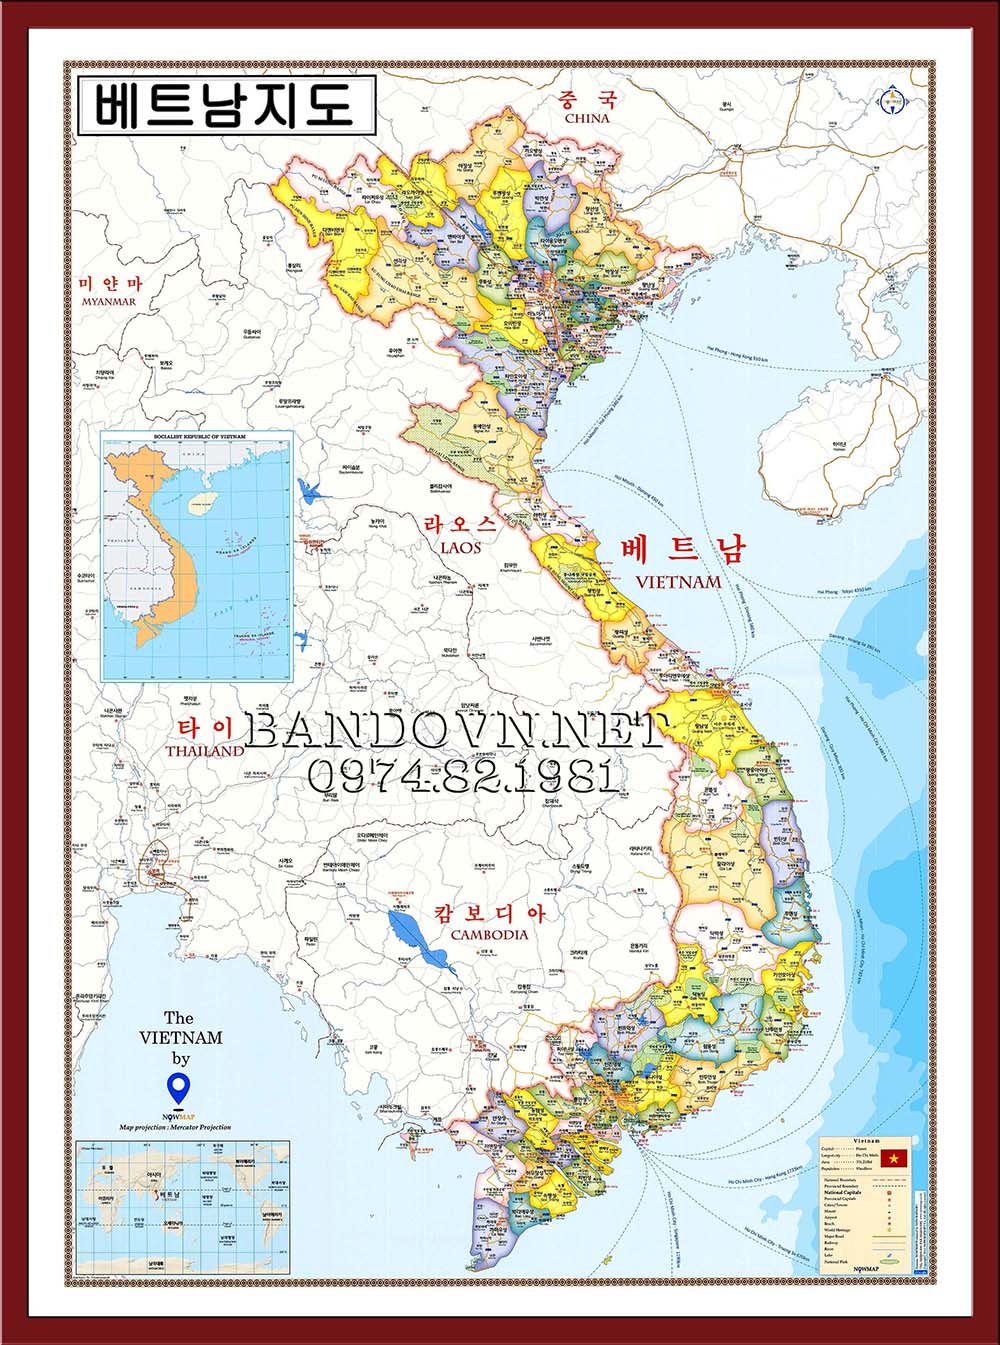 Tận hưởng trải nghiệm thú vị khi tìm hiểu văn hóa và lịch sử đất nước Việt Nam trên bản đồ dễ sử dụng và đầy màu sắc.